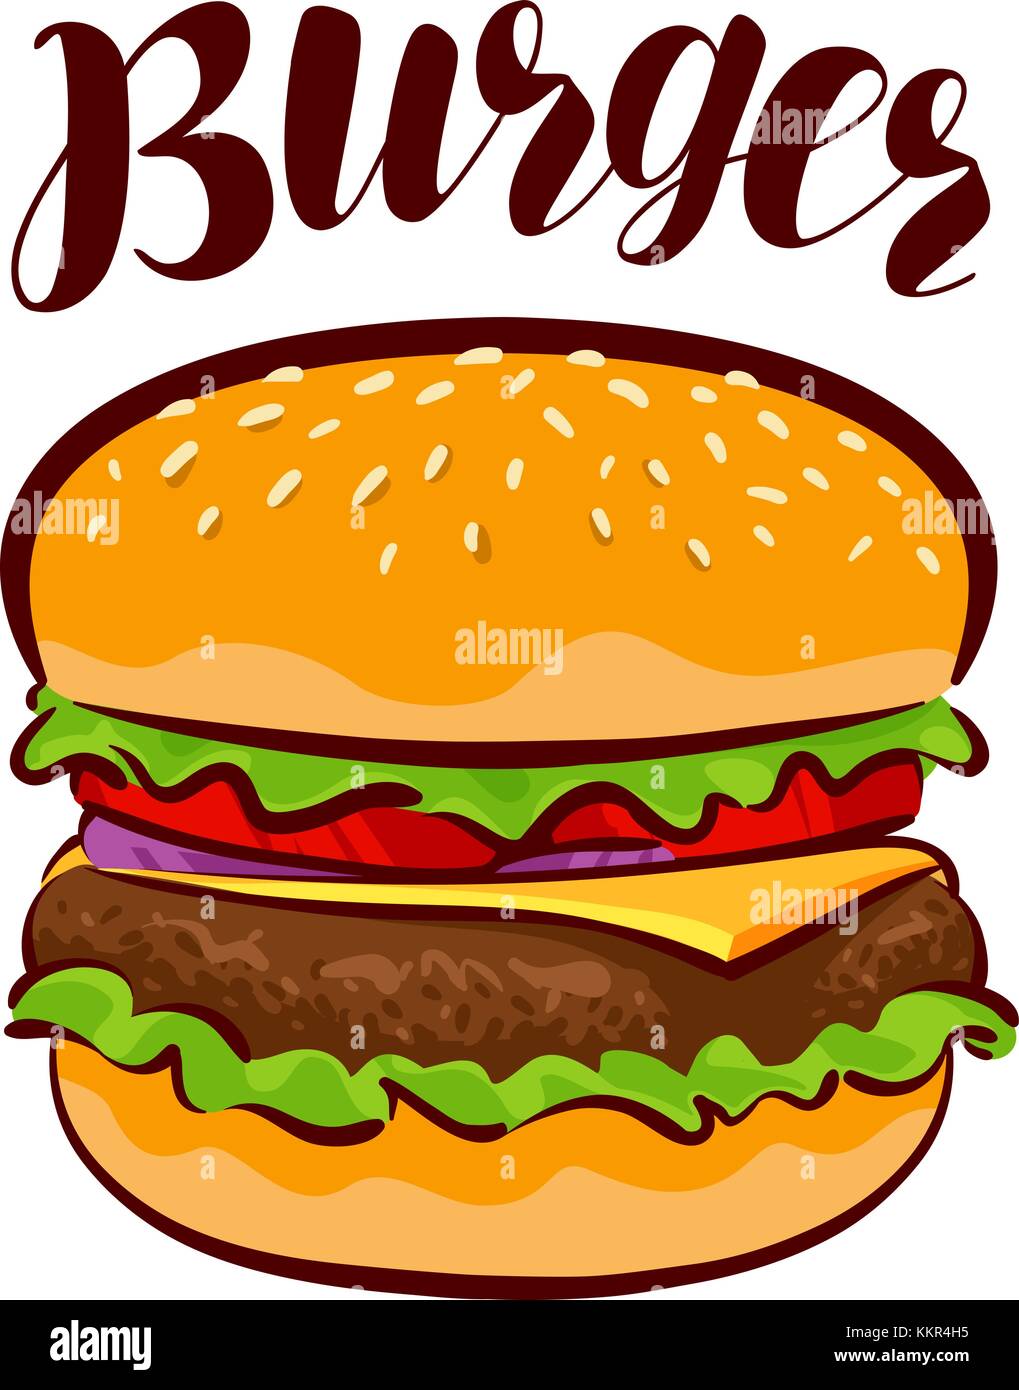 Burger, amerikanisches Fast Food. Element für Design-Menü Restaurant oder Café. Illustration des Zeichentrickvektors Stock Vektor